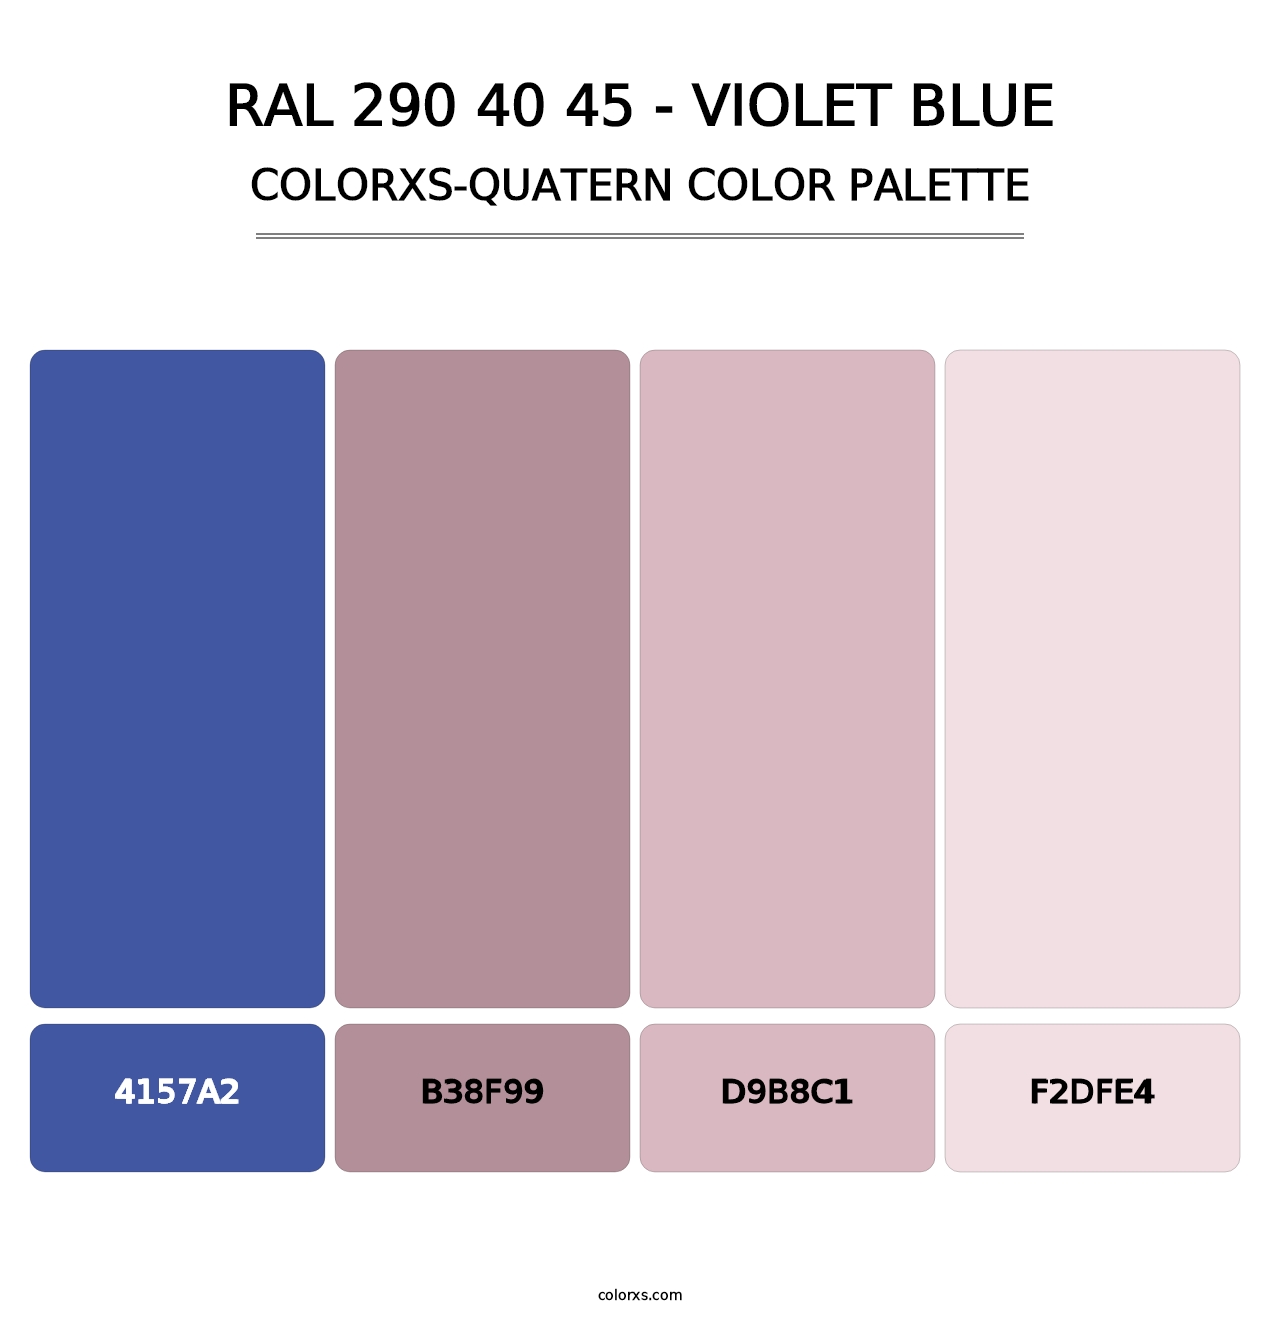 RAL 290 40 45 - Violet Blue - Colorxs Quatern Palette